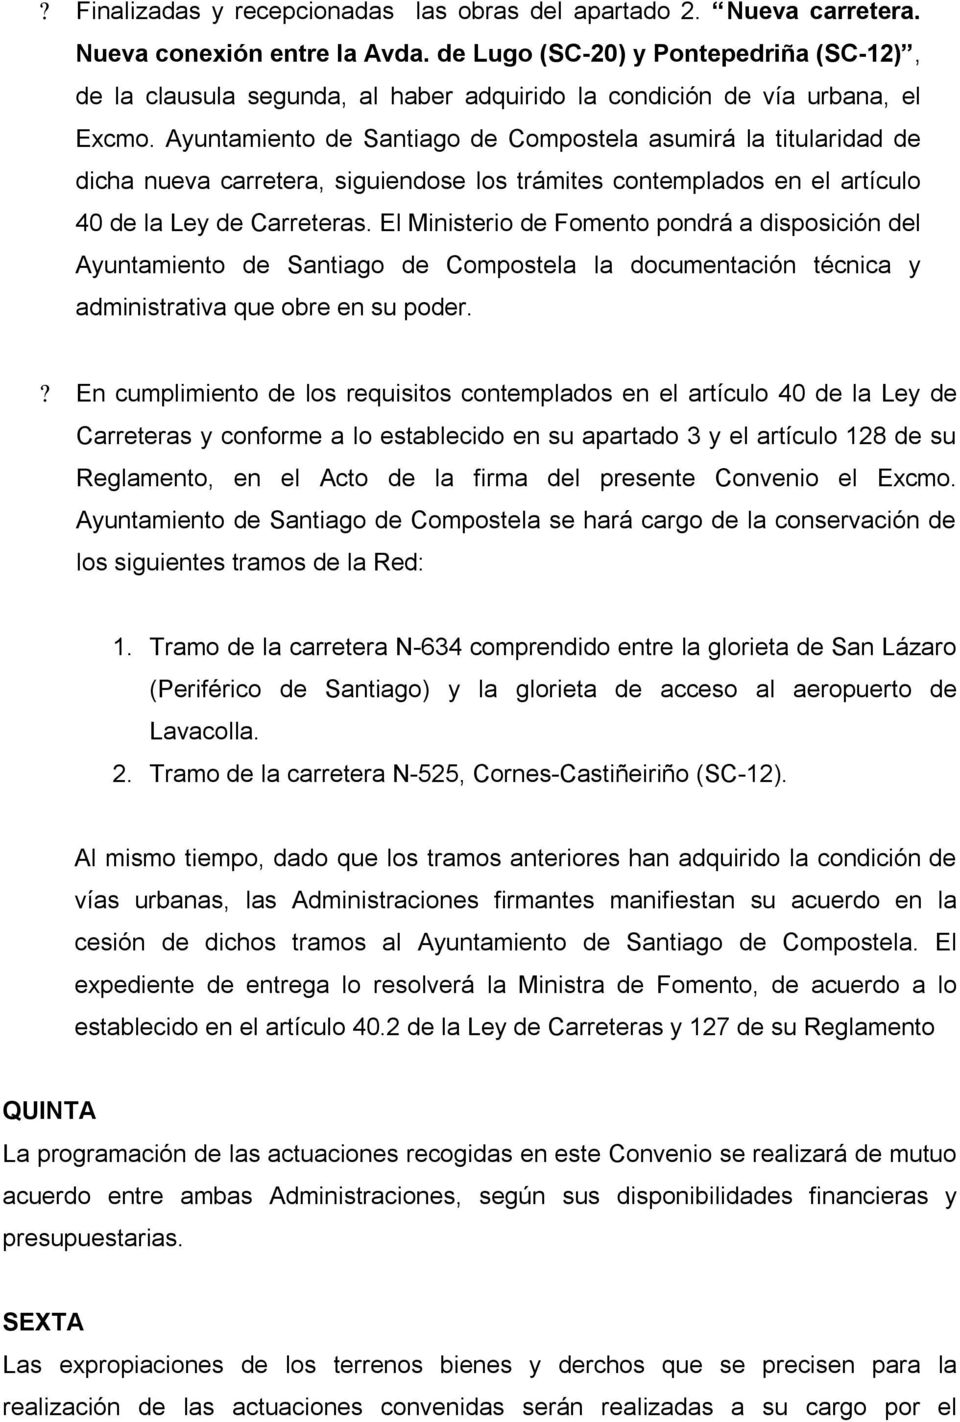 Ayuntamiento de Santiago de Compostela asumirá la titularidad de dicha nueva carretera, siguiendose los trámites contemplados en el artículo 40 de la Ley de Carreteras.